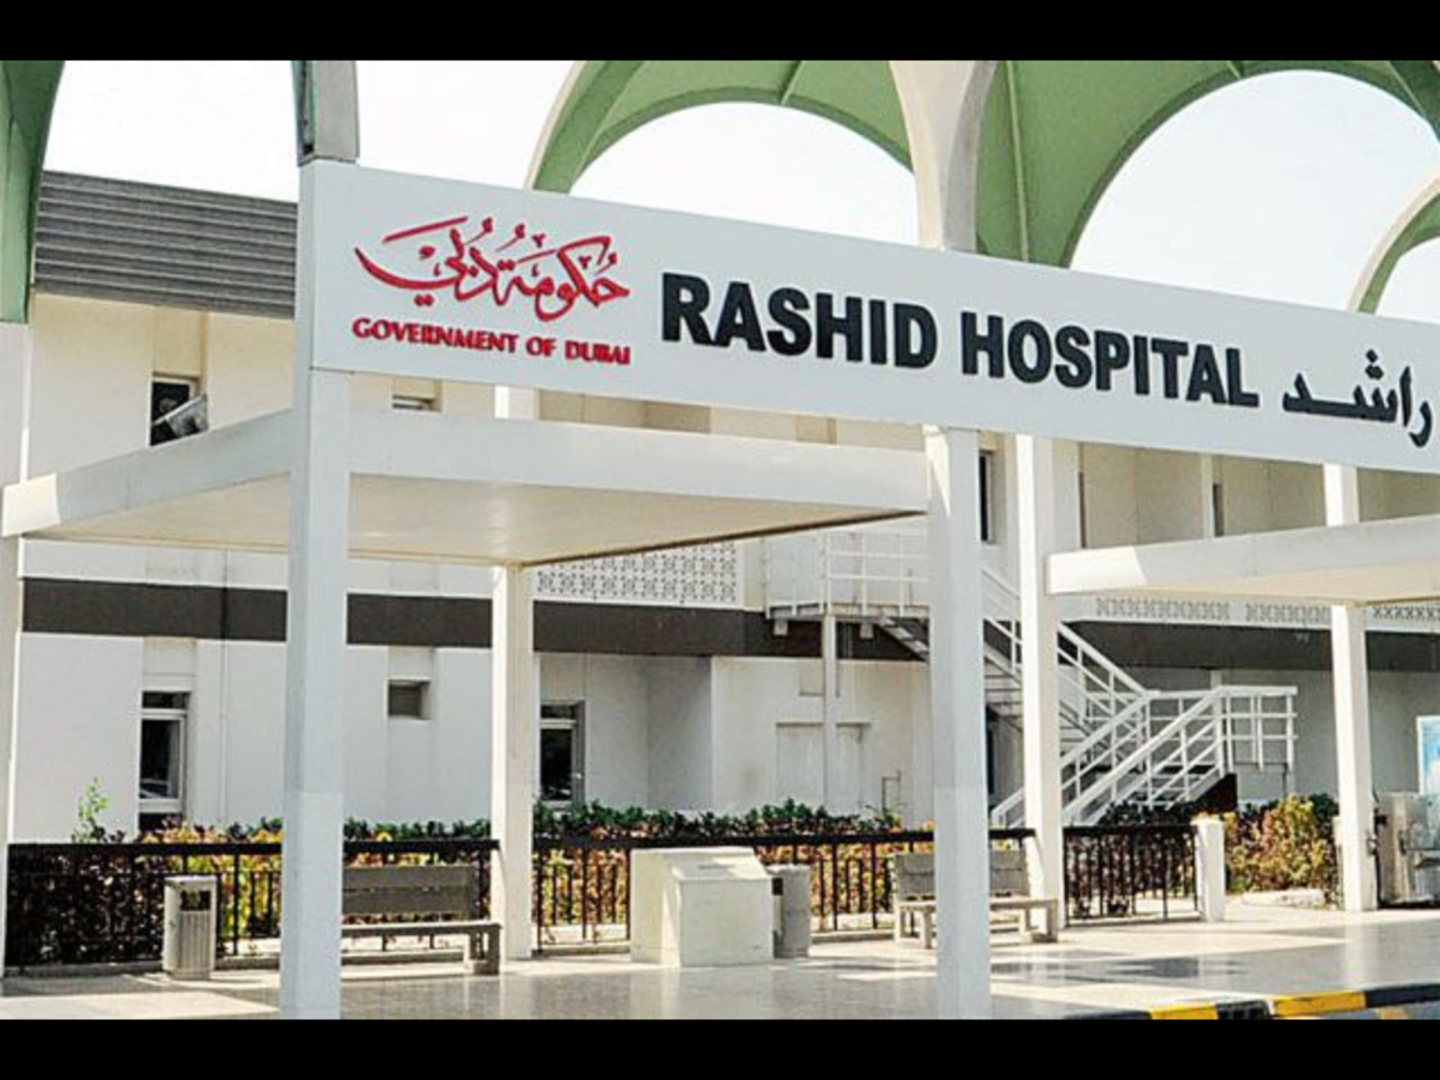 Rashid Hospital Careers - Dubai UAE